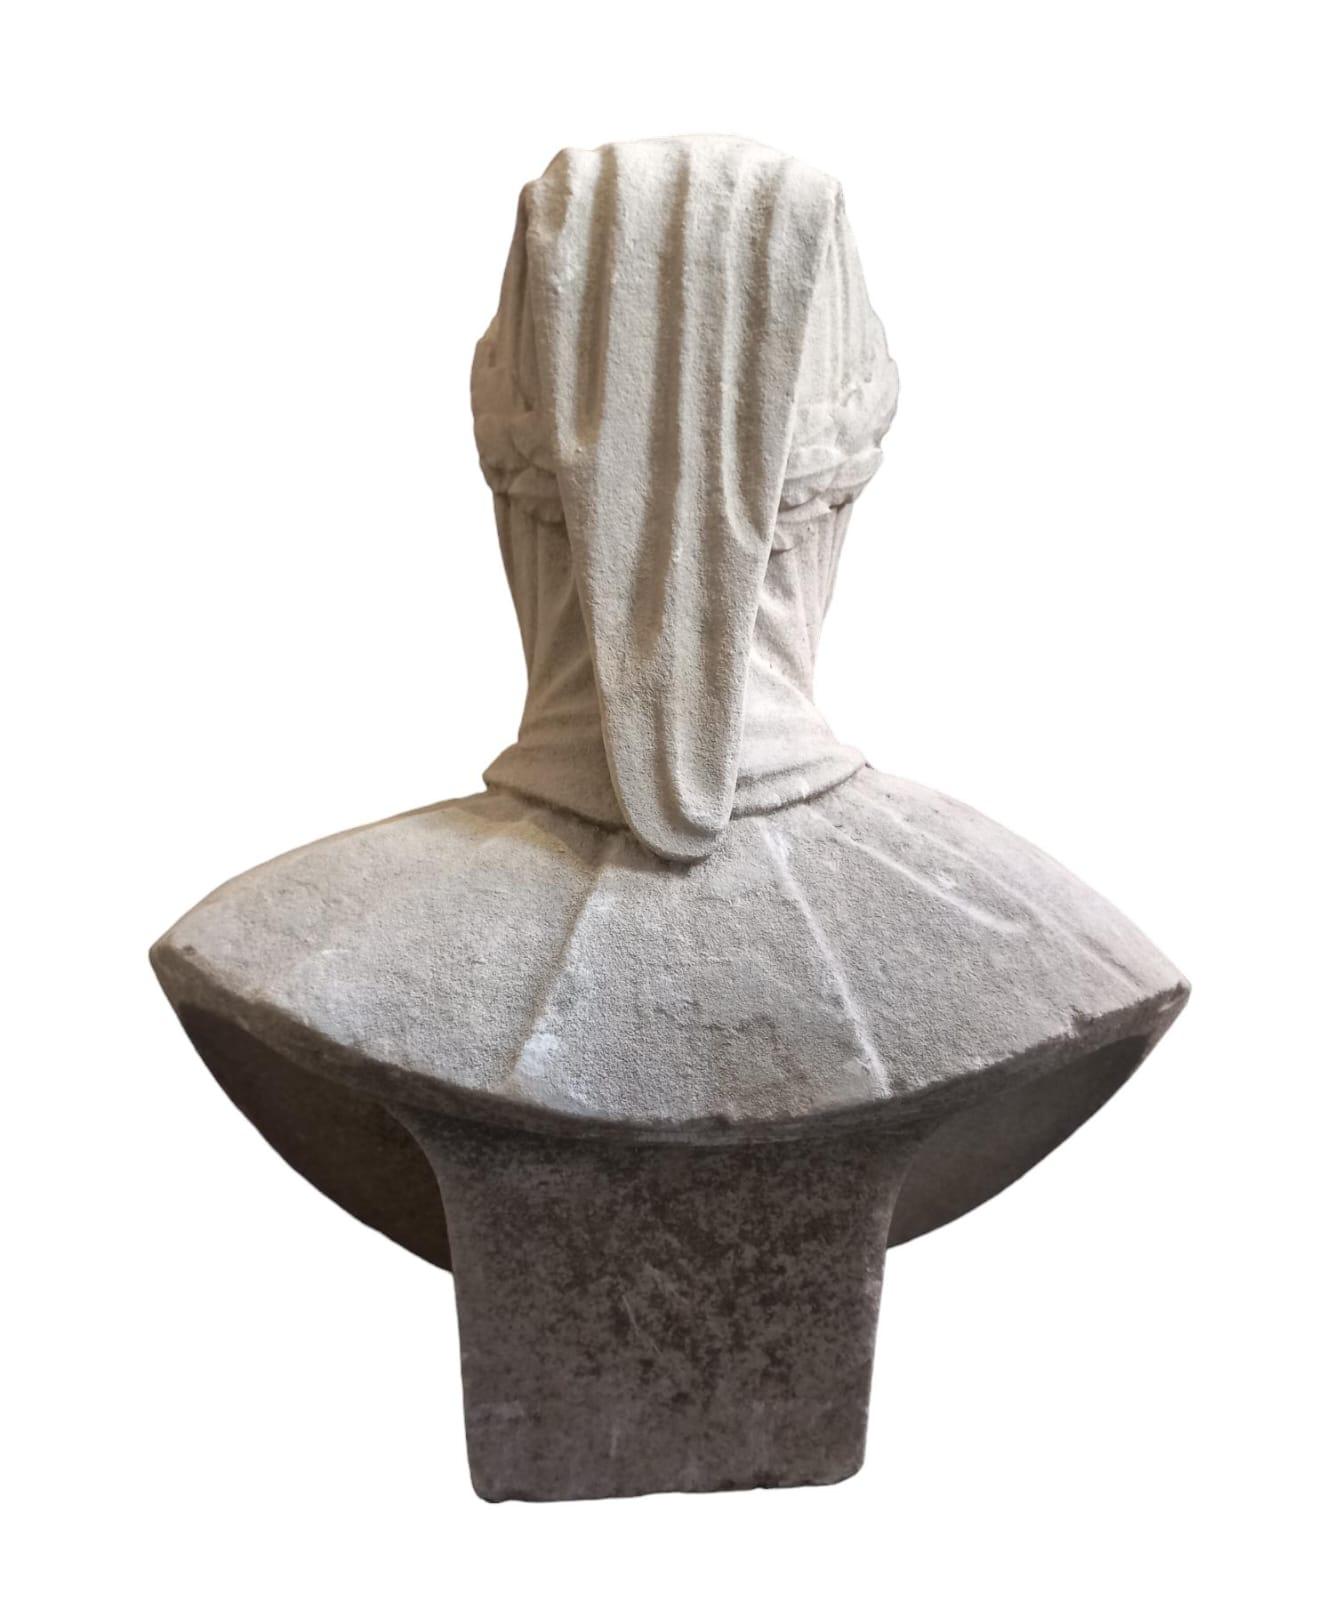 Busto in pietra raffigurante il ritratto del celebre poeta rinascimentale Francesco Petrarca, epoca XIX secolo, altezza 56 cm, dimensioni massime 48x24 cm.
Il busto è probabilmente stato conservato anticamente all'esterno, la pietra è stata usurata